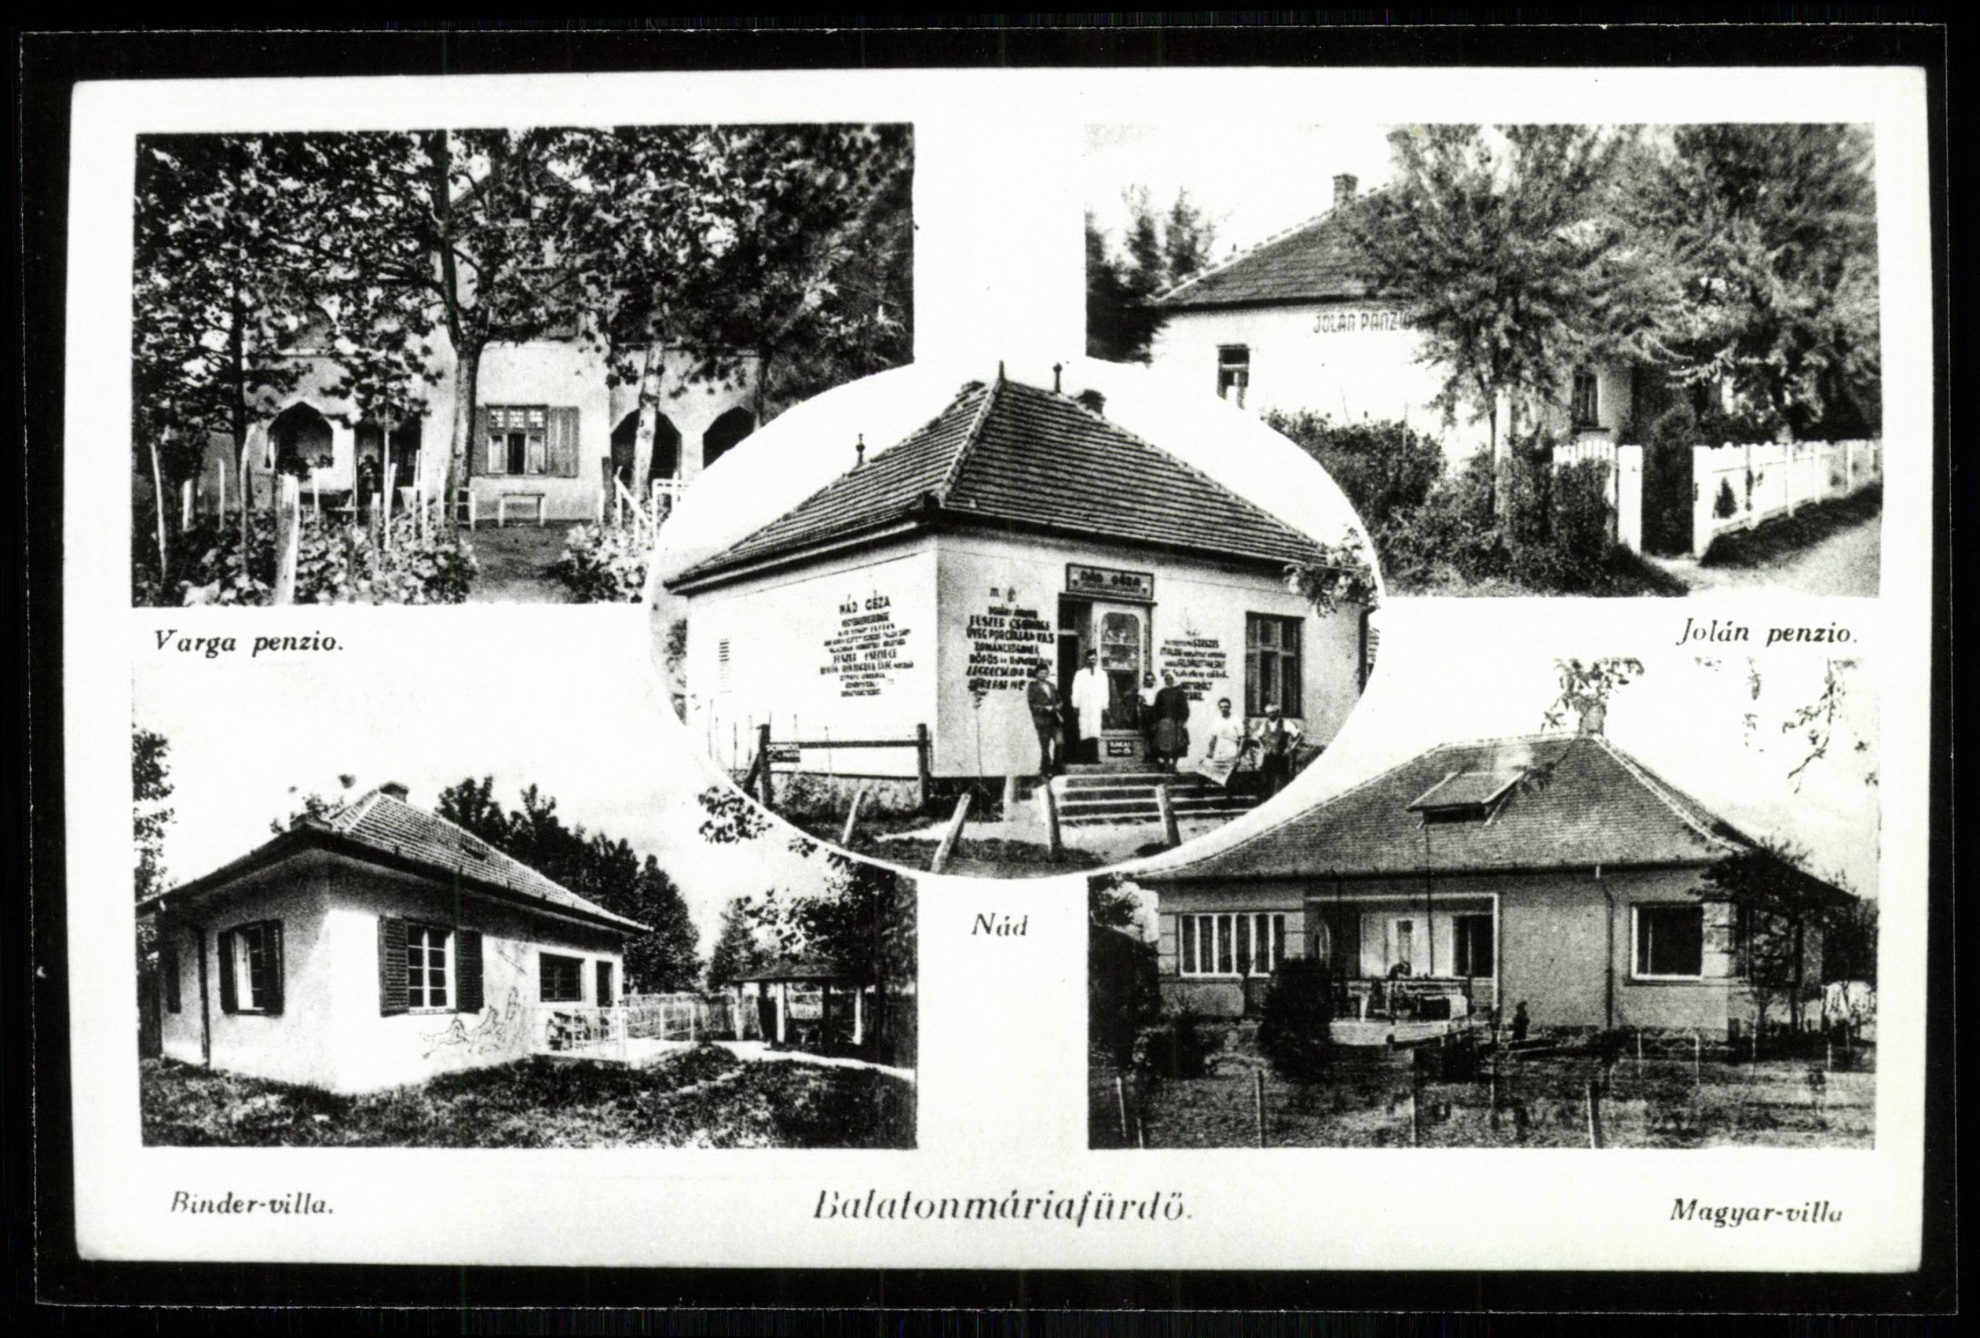 Balatonmáriafürdő Varga penzio, Jolán penzio, Binder villa, Magyar villa, Nád (Magyar Kereskedelmi és Vendéglátóipari Múzeum CC BY-NC-ND)